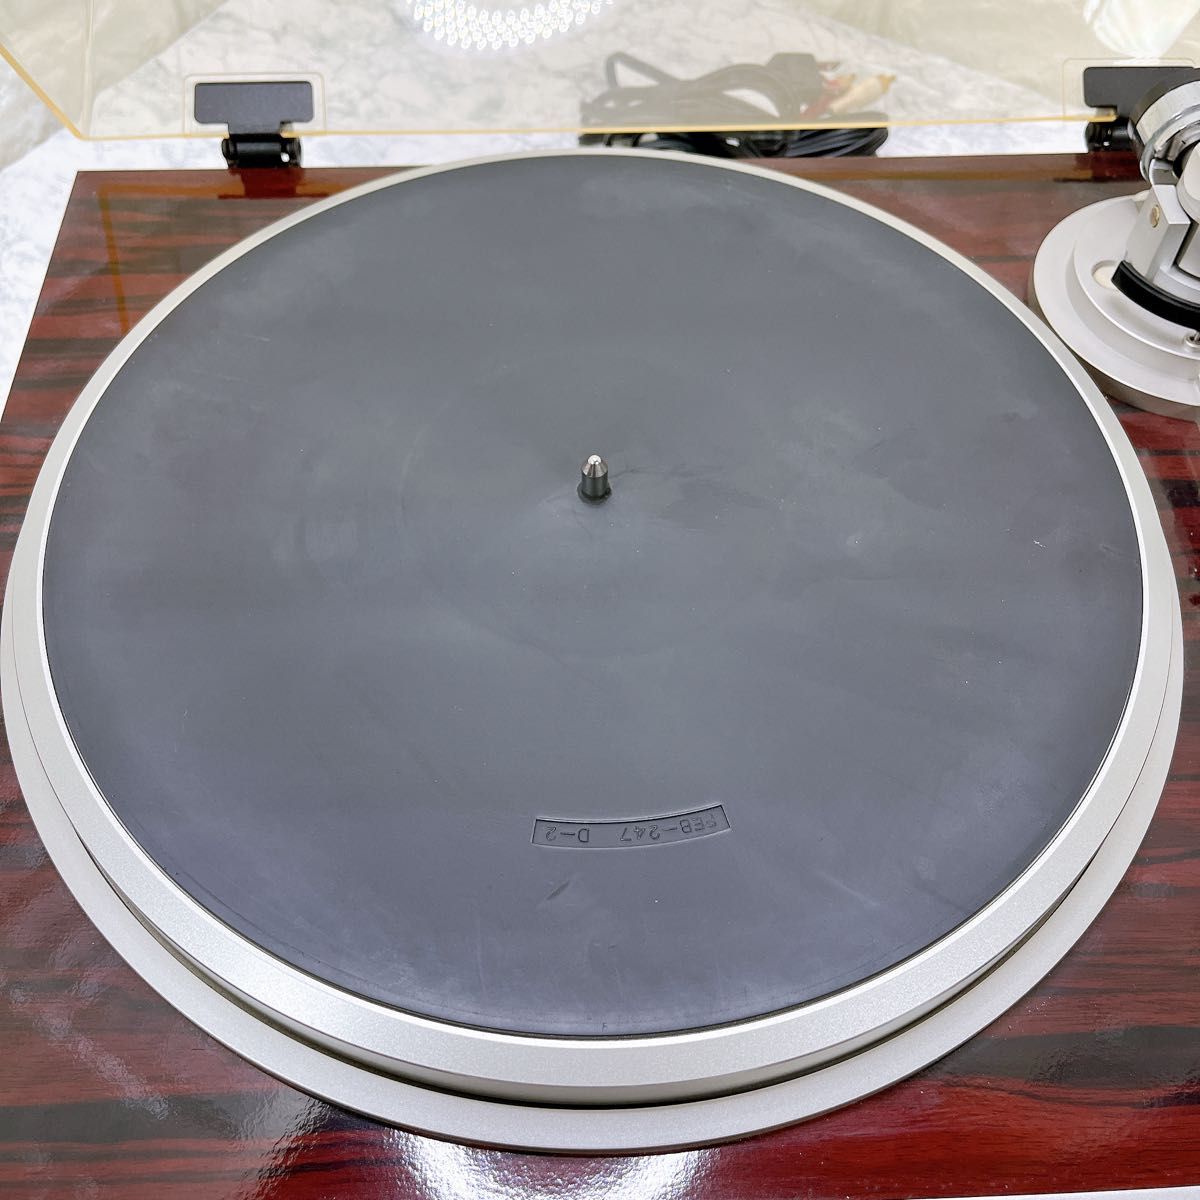 パイオニア PL-707 ダイレクトドライブ フルオートレコードプレーヤー 取説付属 Pioneer ターンテーブル